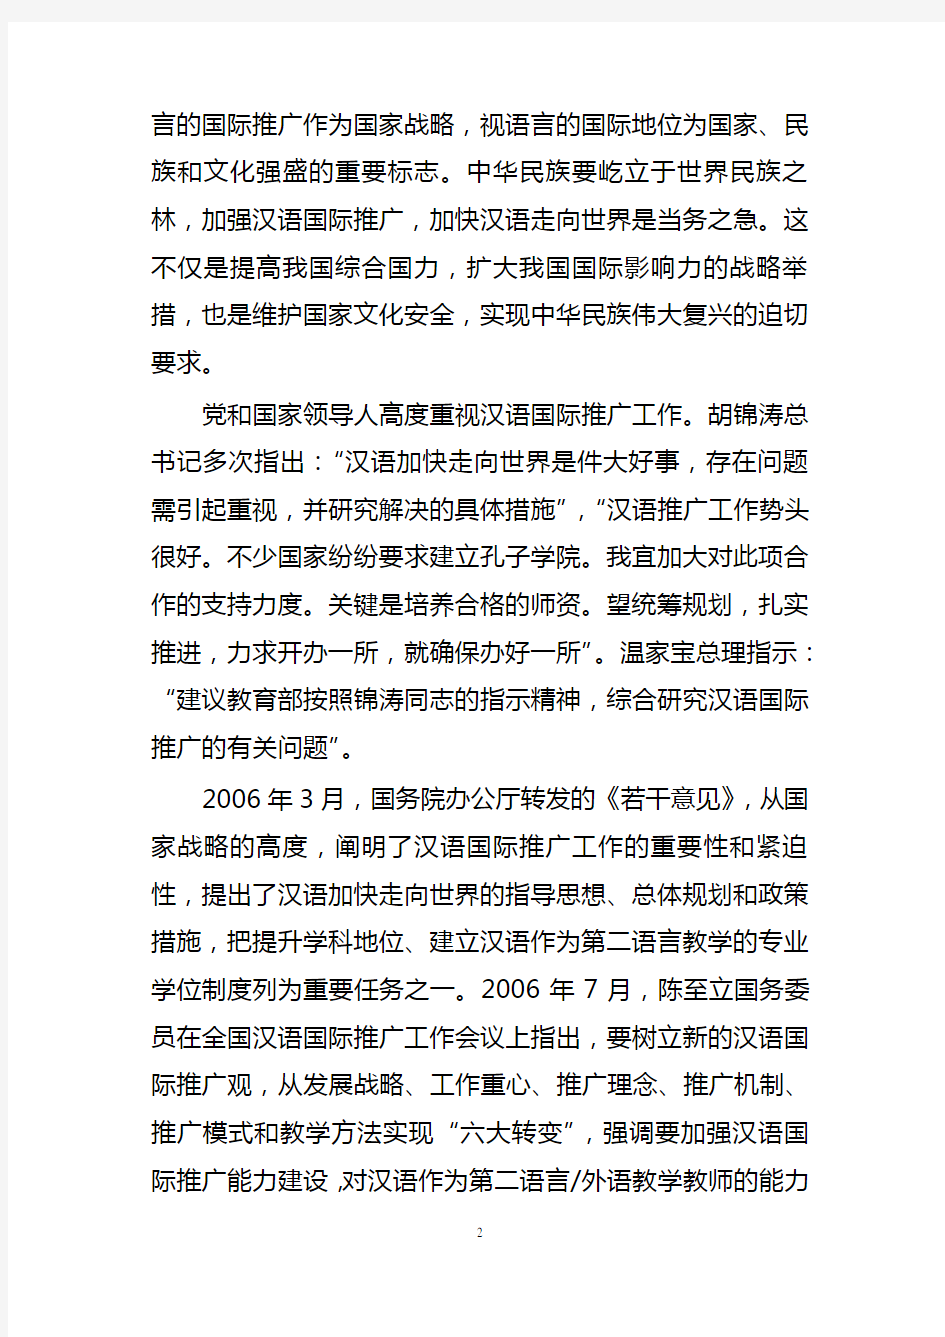 汉语国际教育硕士专业学位设置方案-中华人民共和国教育部